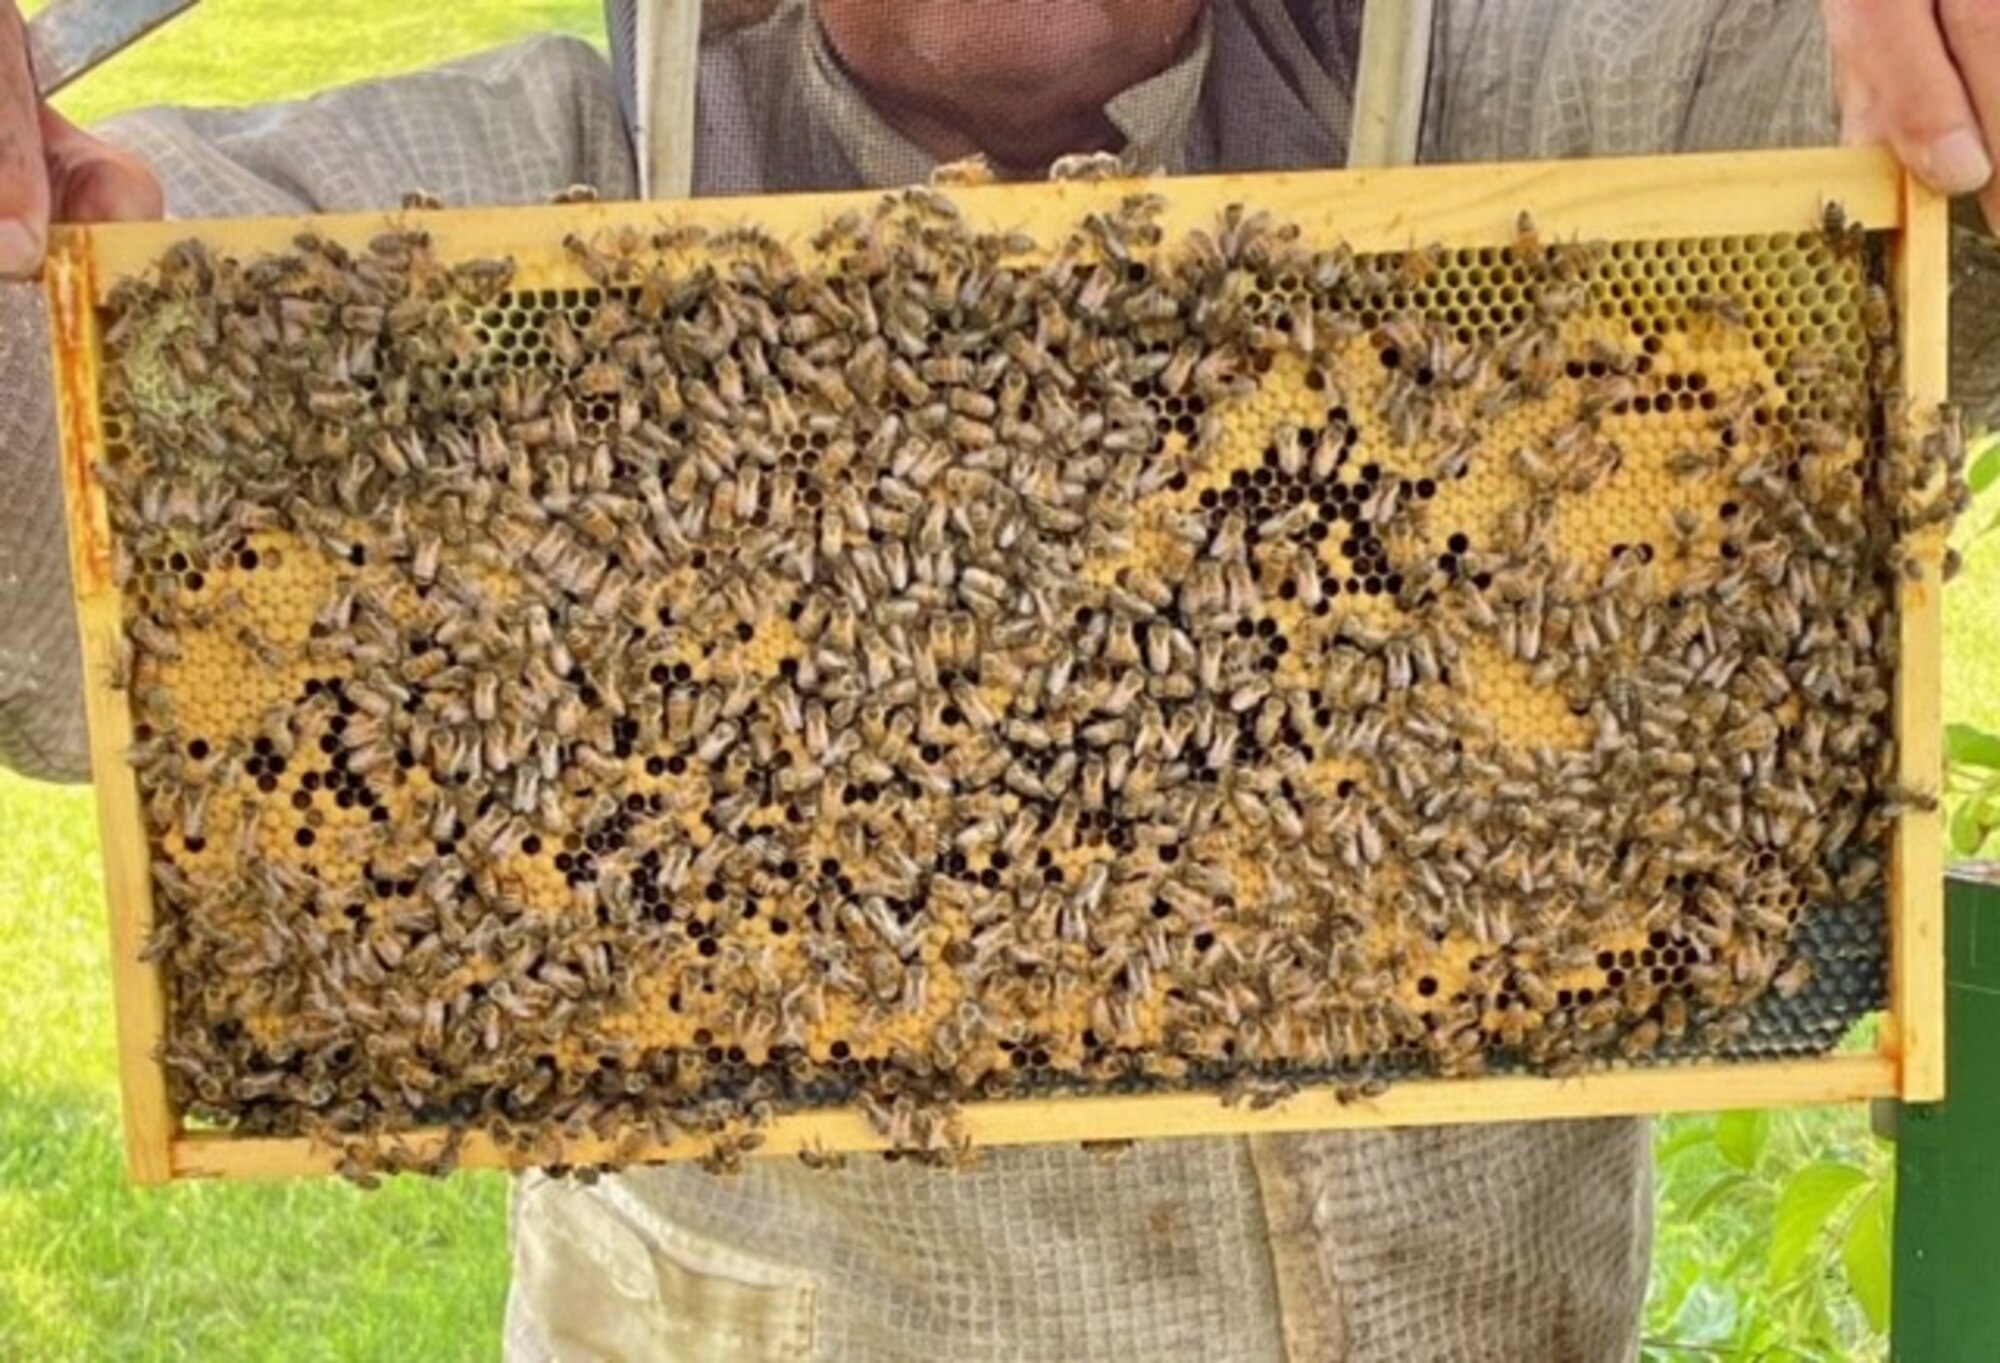 A honeybee brood frame at Huffman Prairie